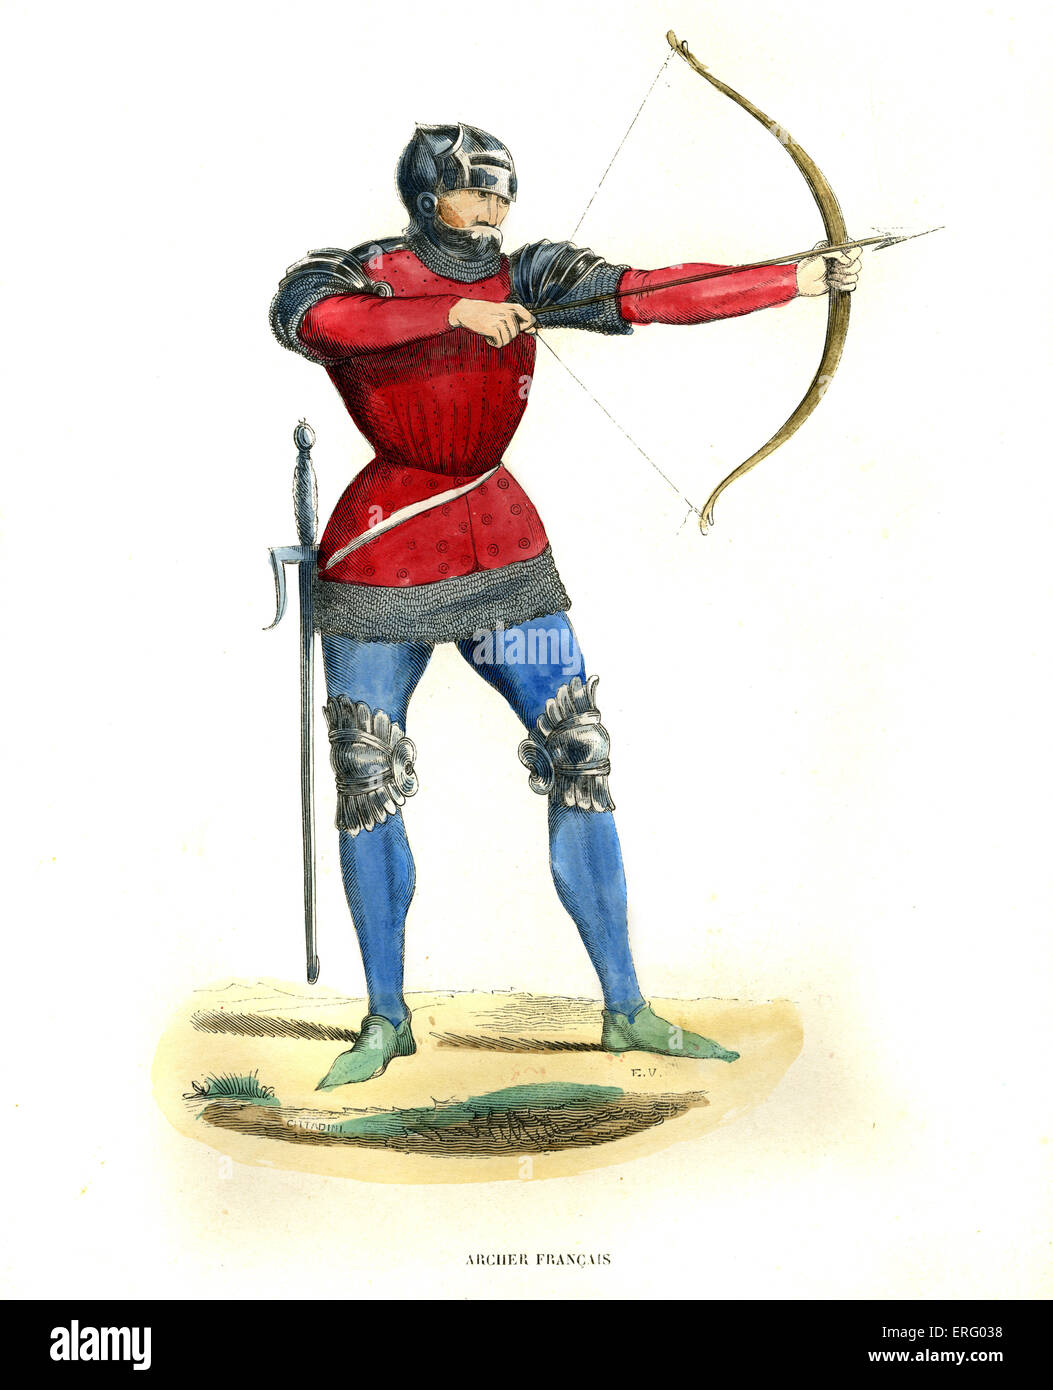 Arciere francese nel medioevo con arco e frecce con la corazza la protezione ginocchia, spalle e testa. Indossa una spada sulla sua anca. Foto Stock